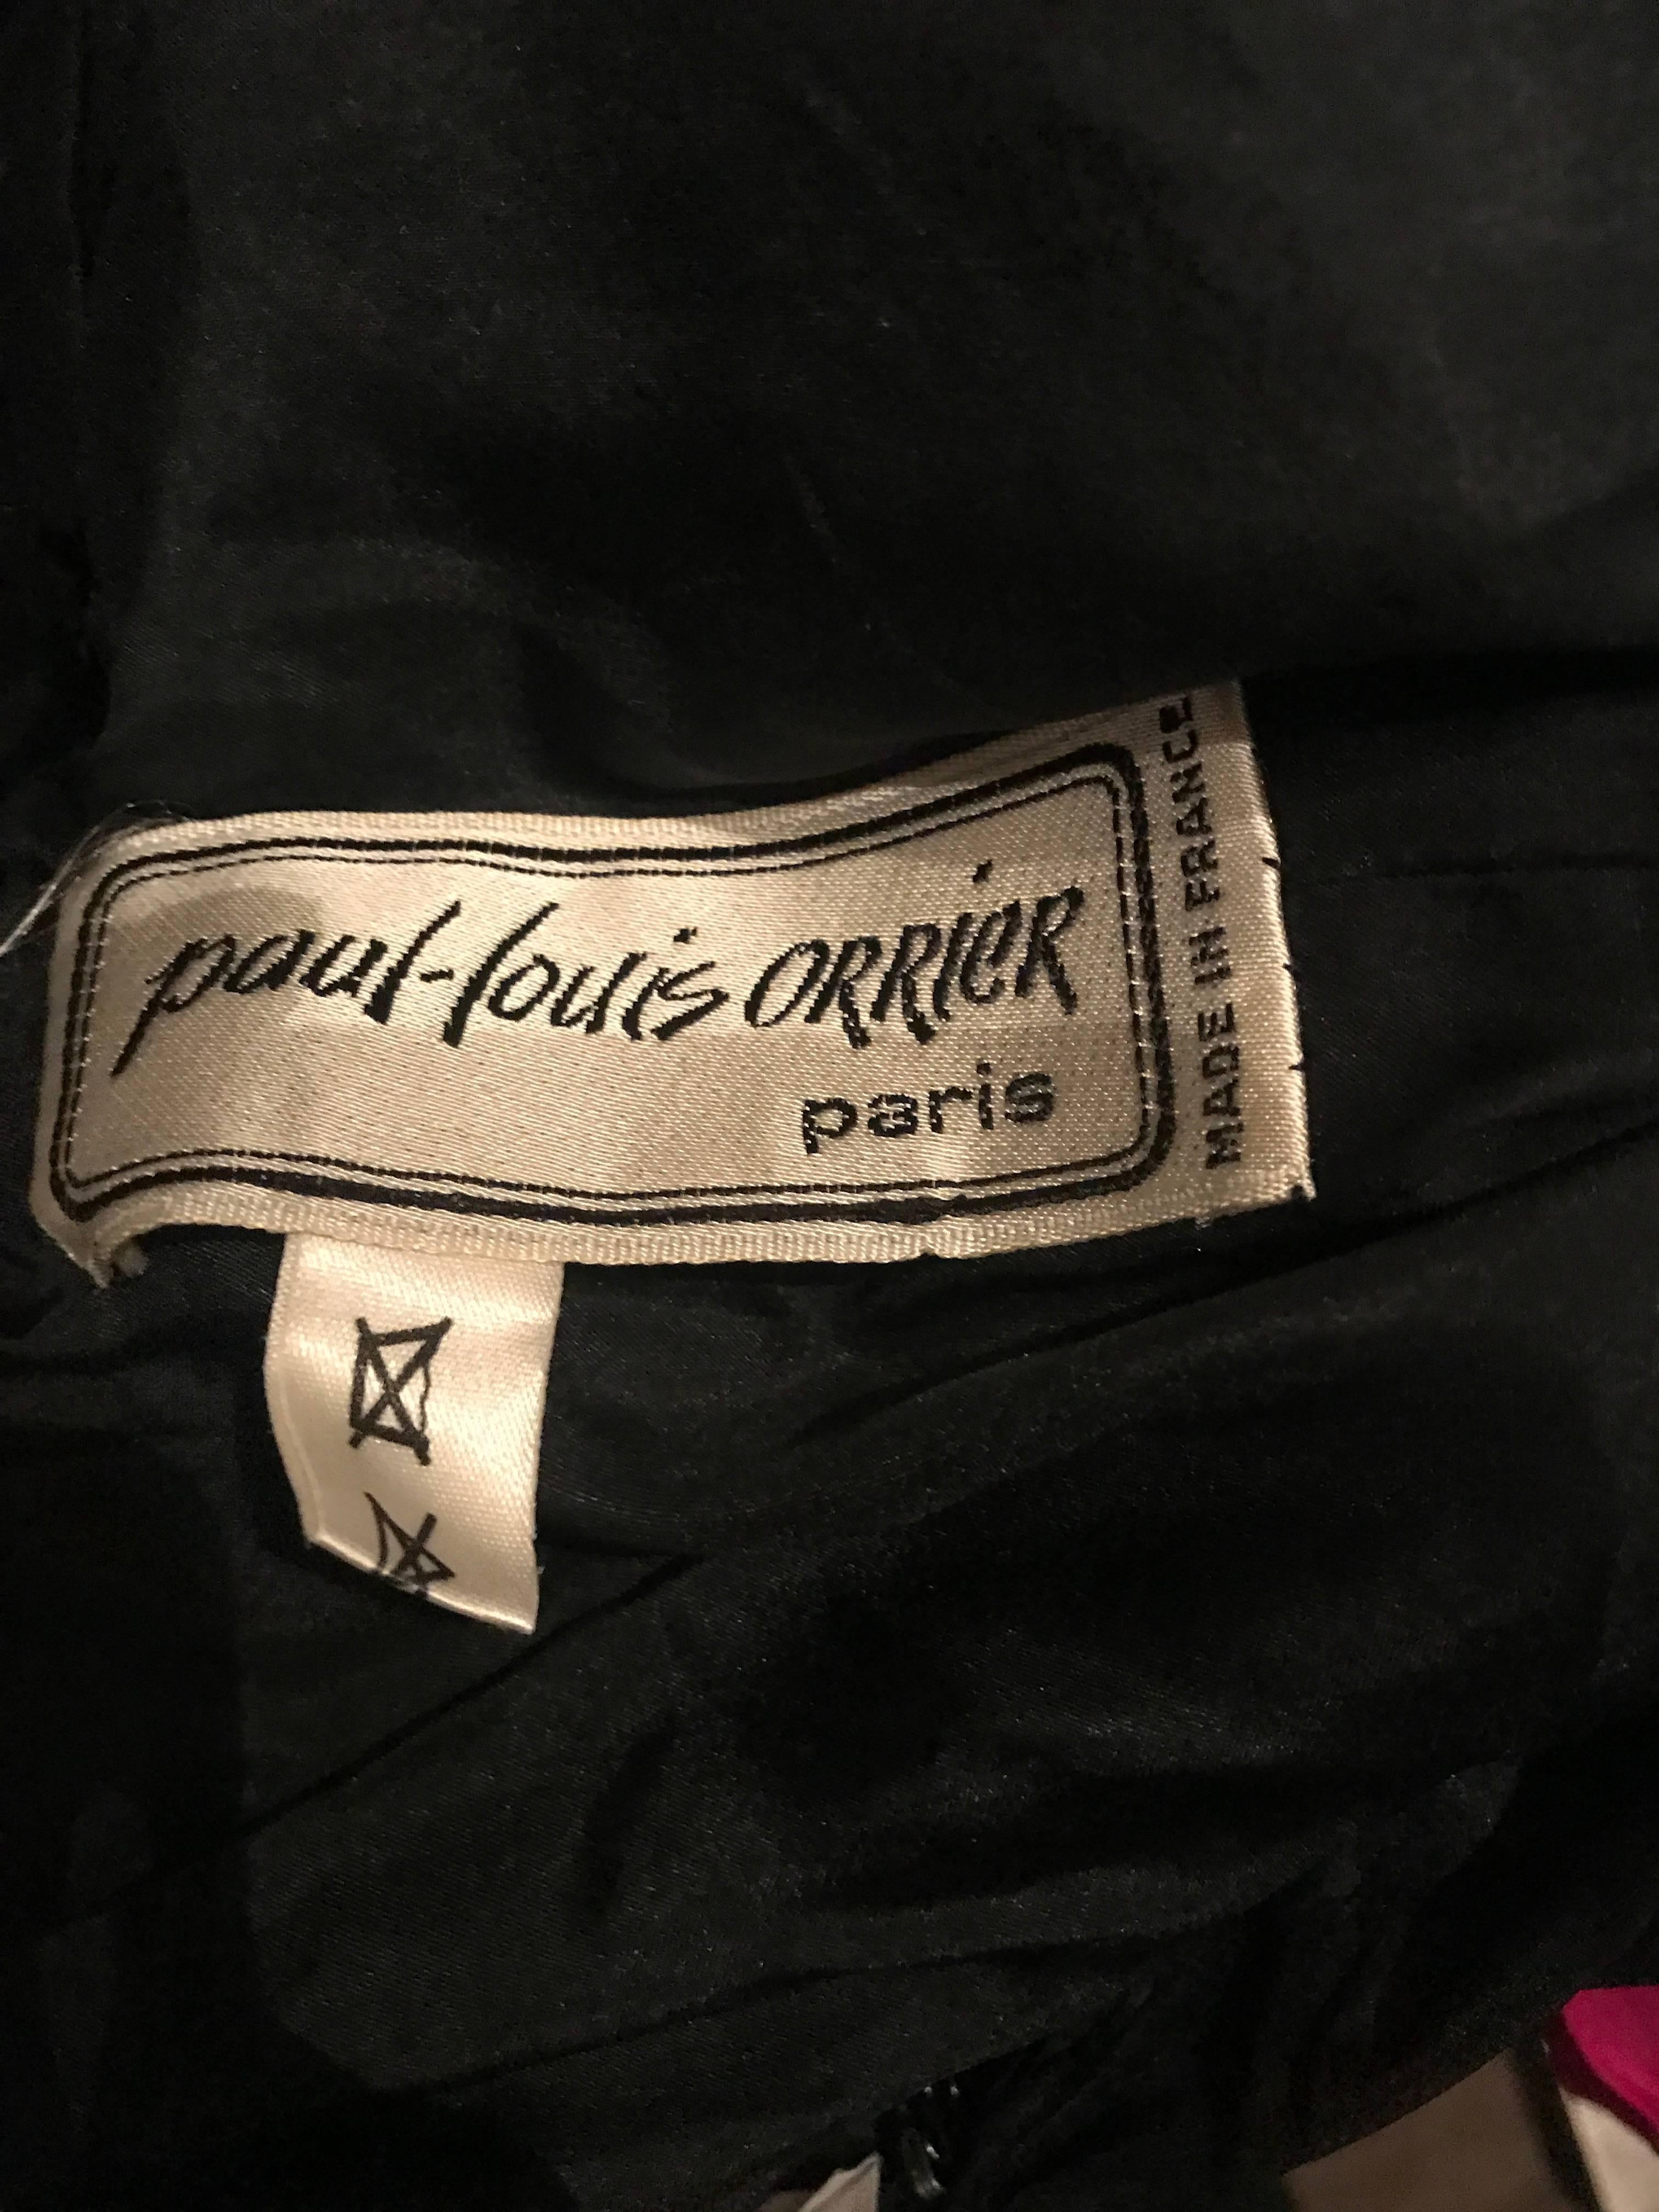 I980s Vintage Paul Louis Orrier Couture Avant Garde Taffeta 80s Cocktail Dress For Sale 5